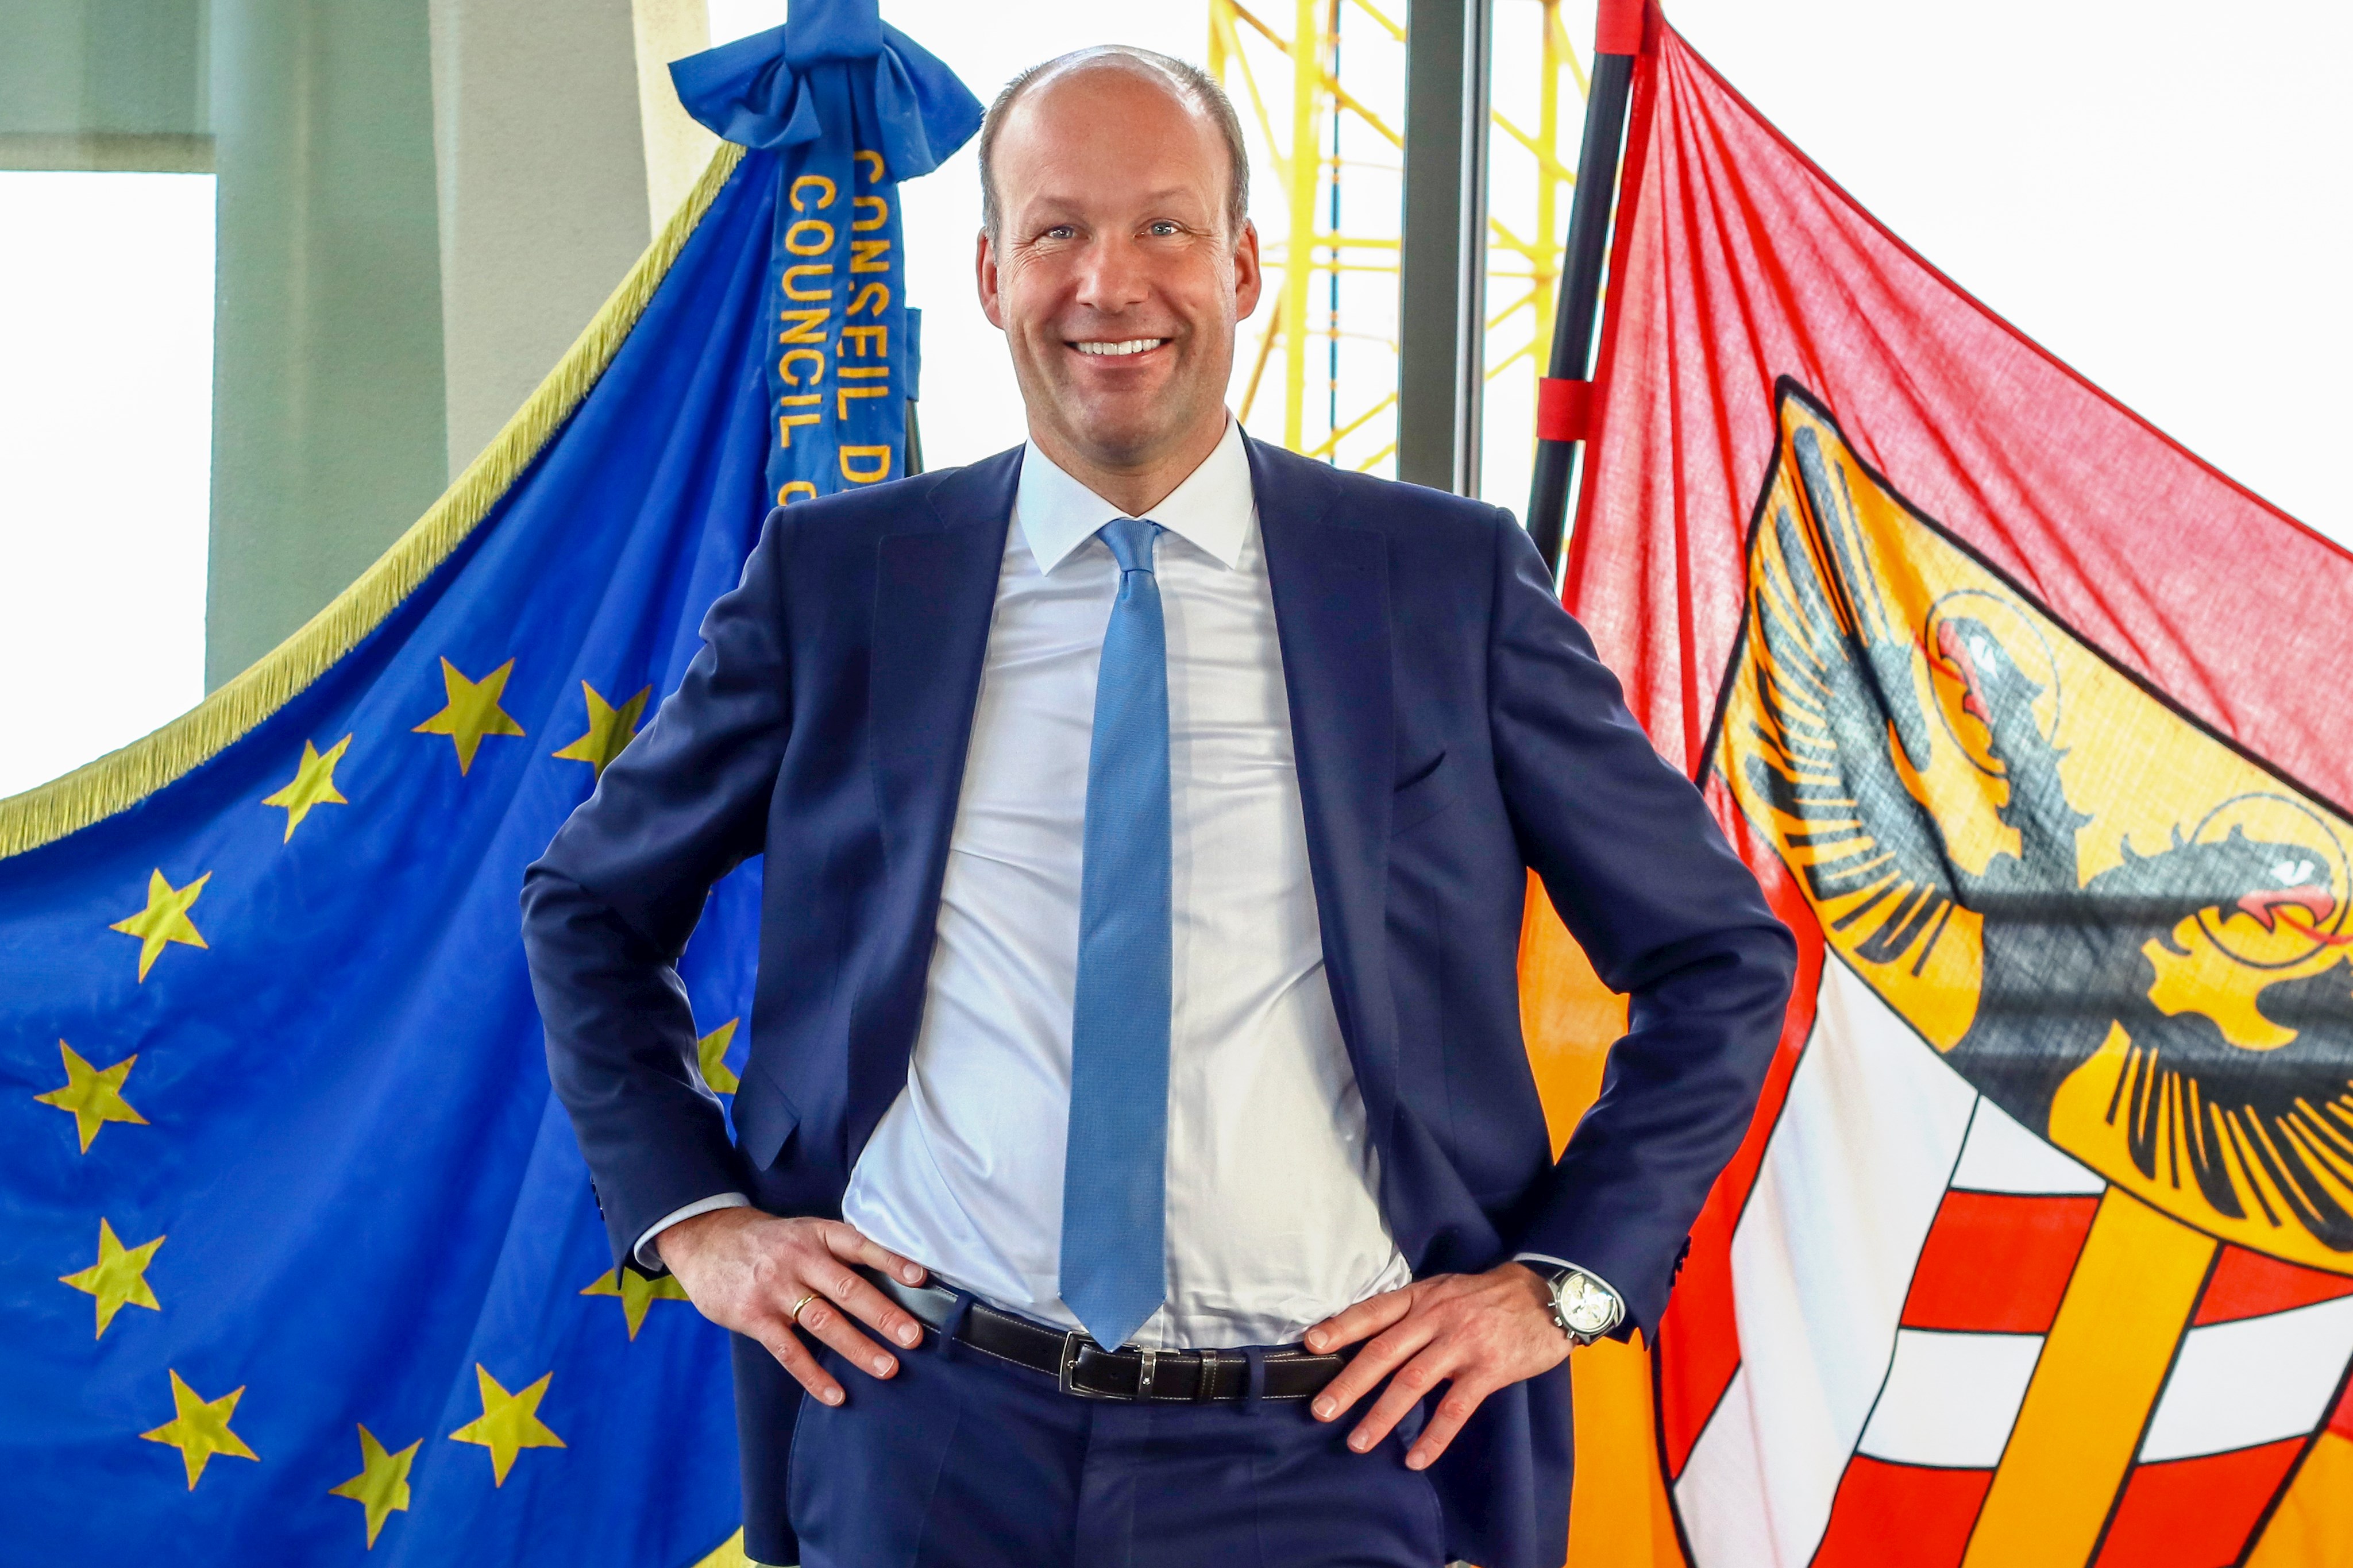 Bezirkstagspräsident Sailer zur Europawahl: Für Europa eintreten